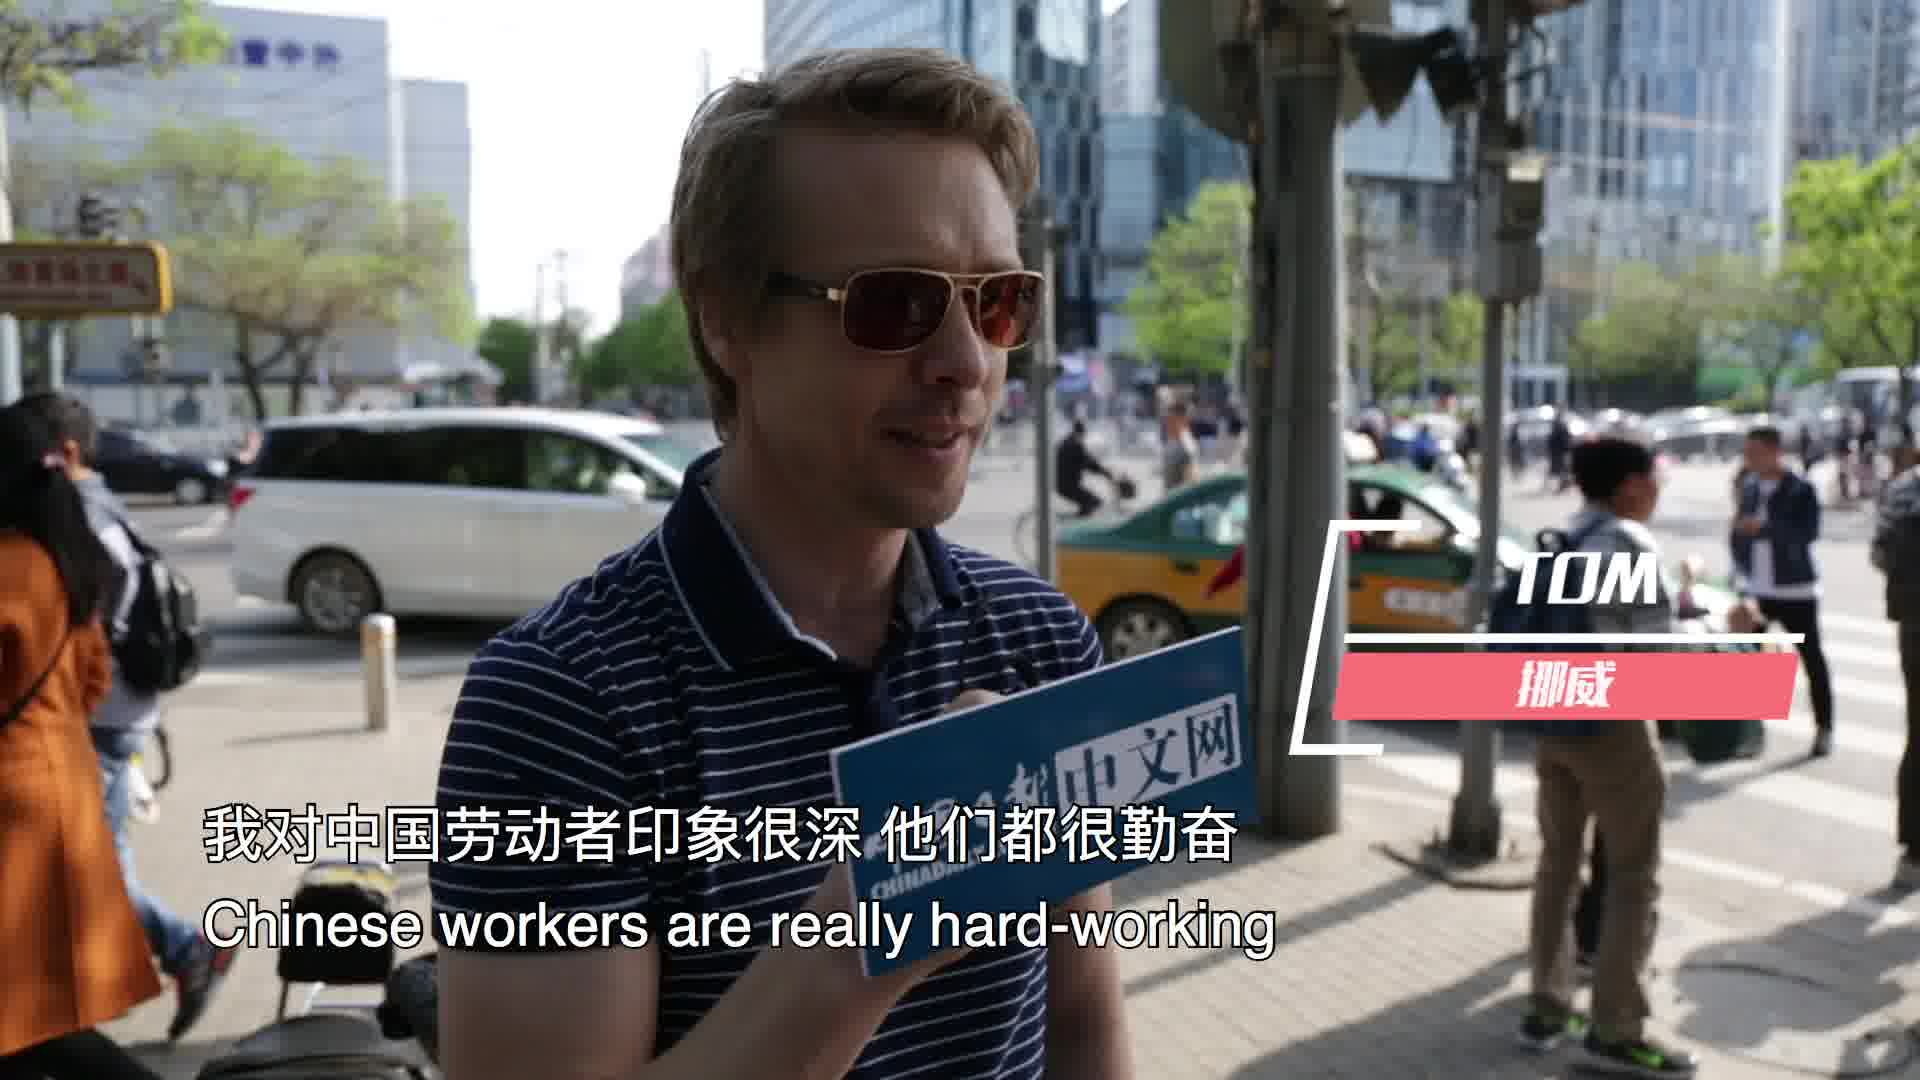 听听！老外眼中的中国劳动者竟是这样的